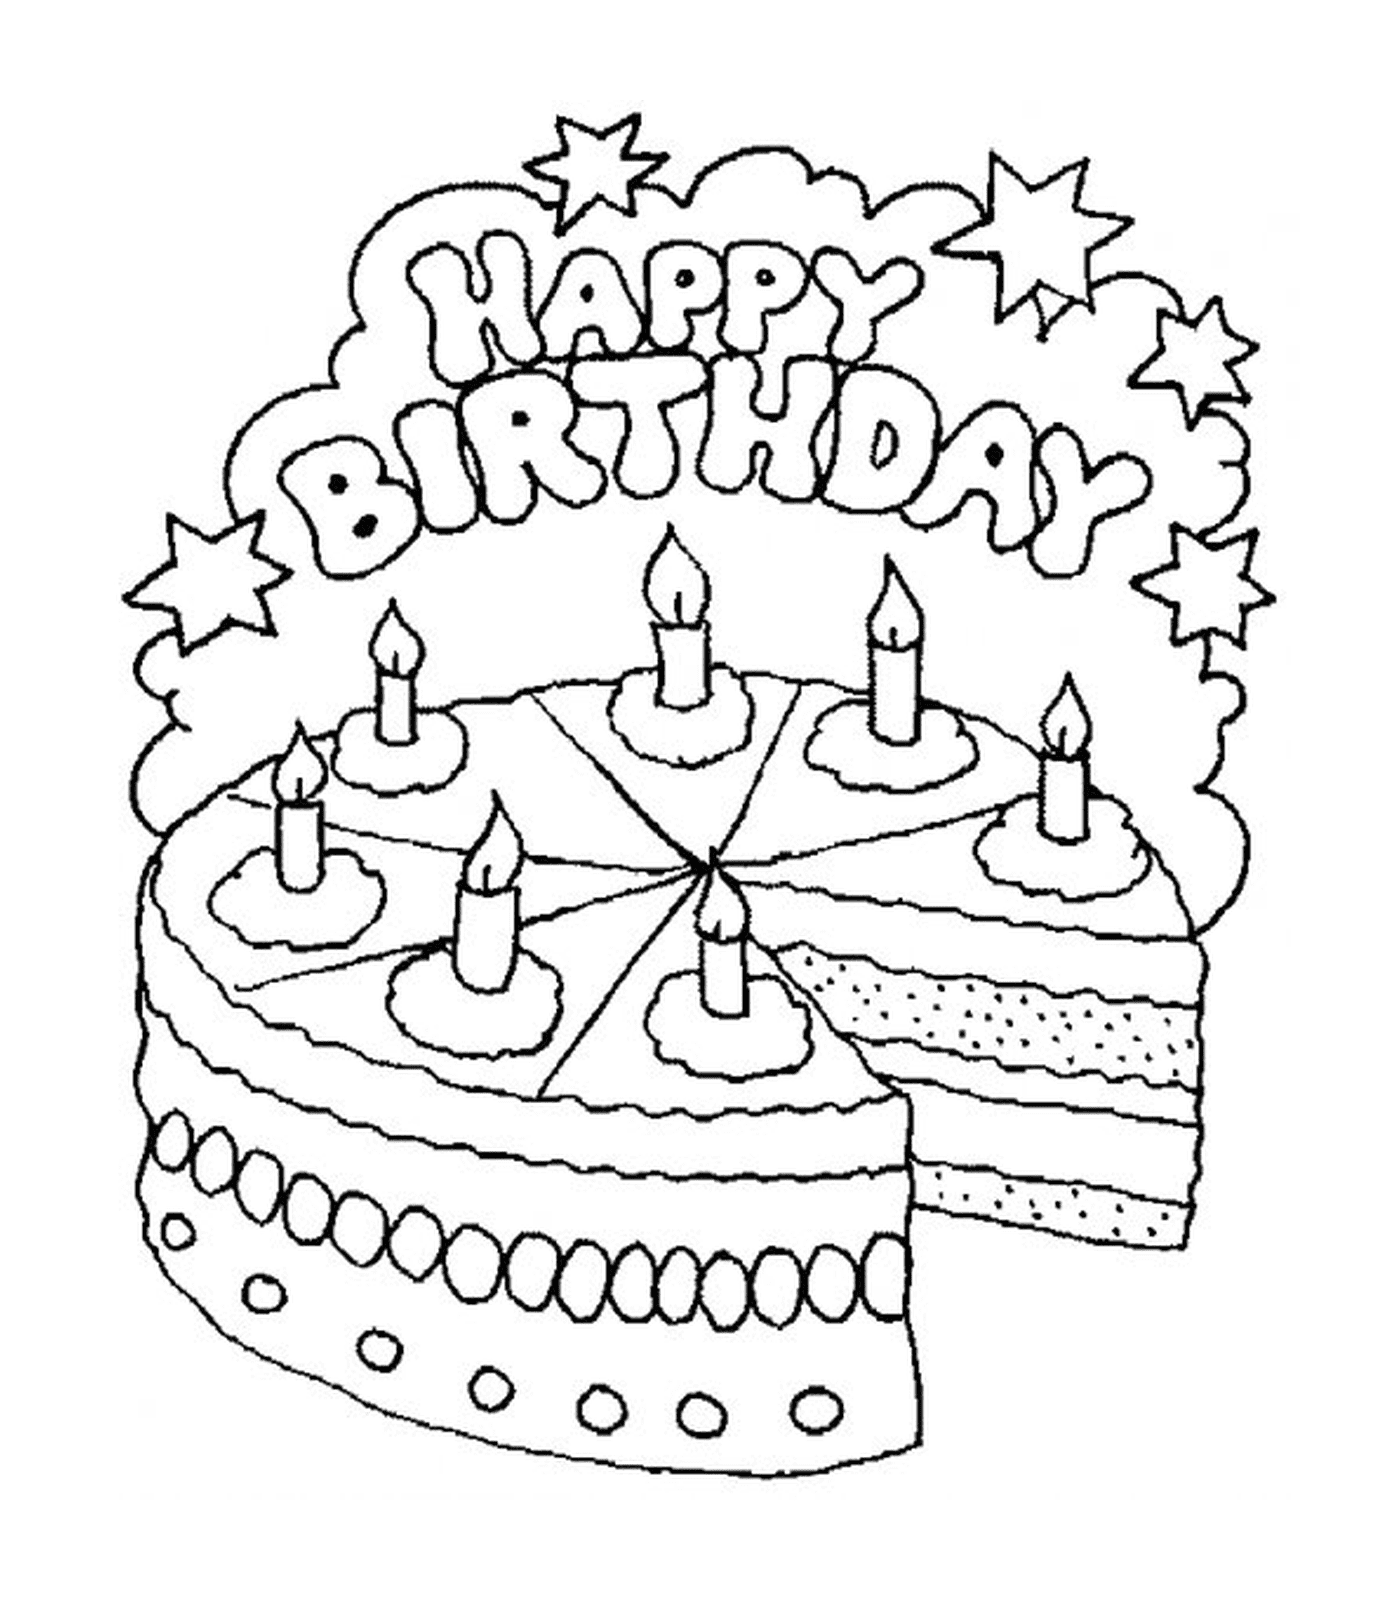  Un pastel de cumpleaños con seis velas 